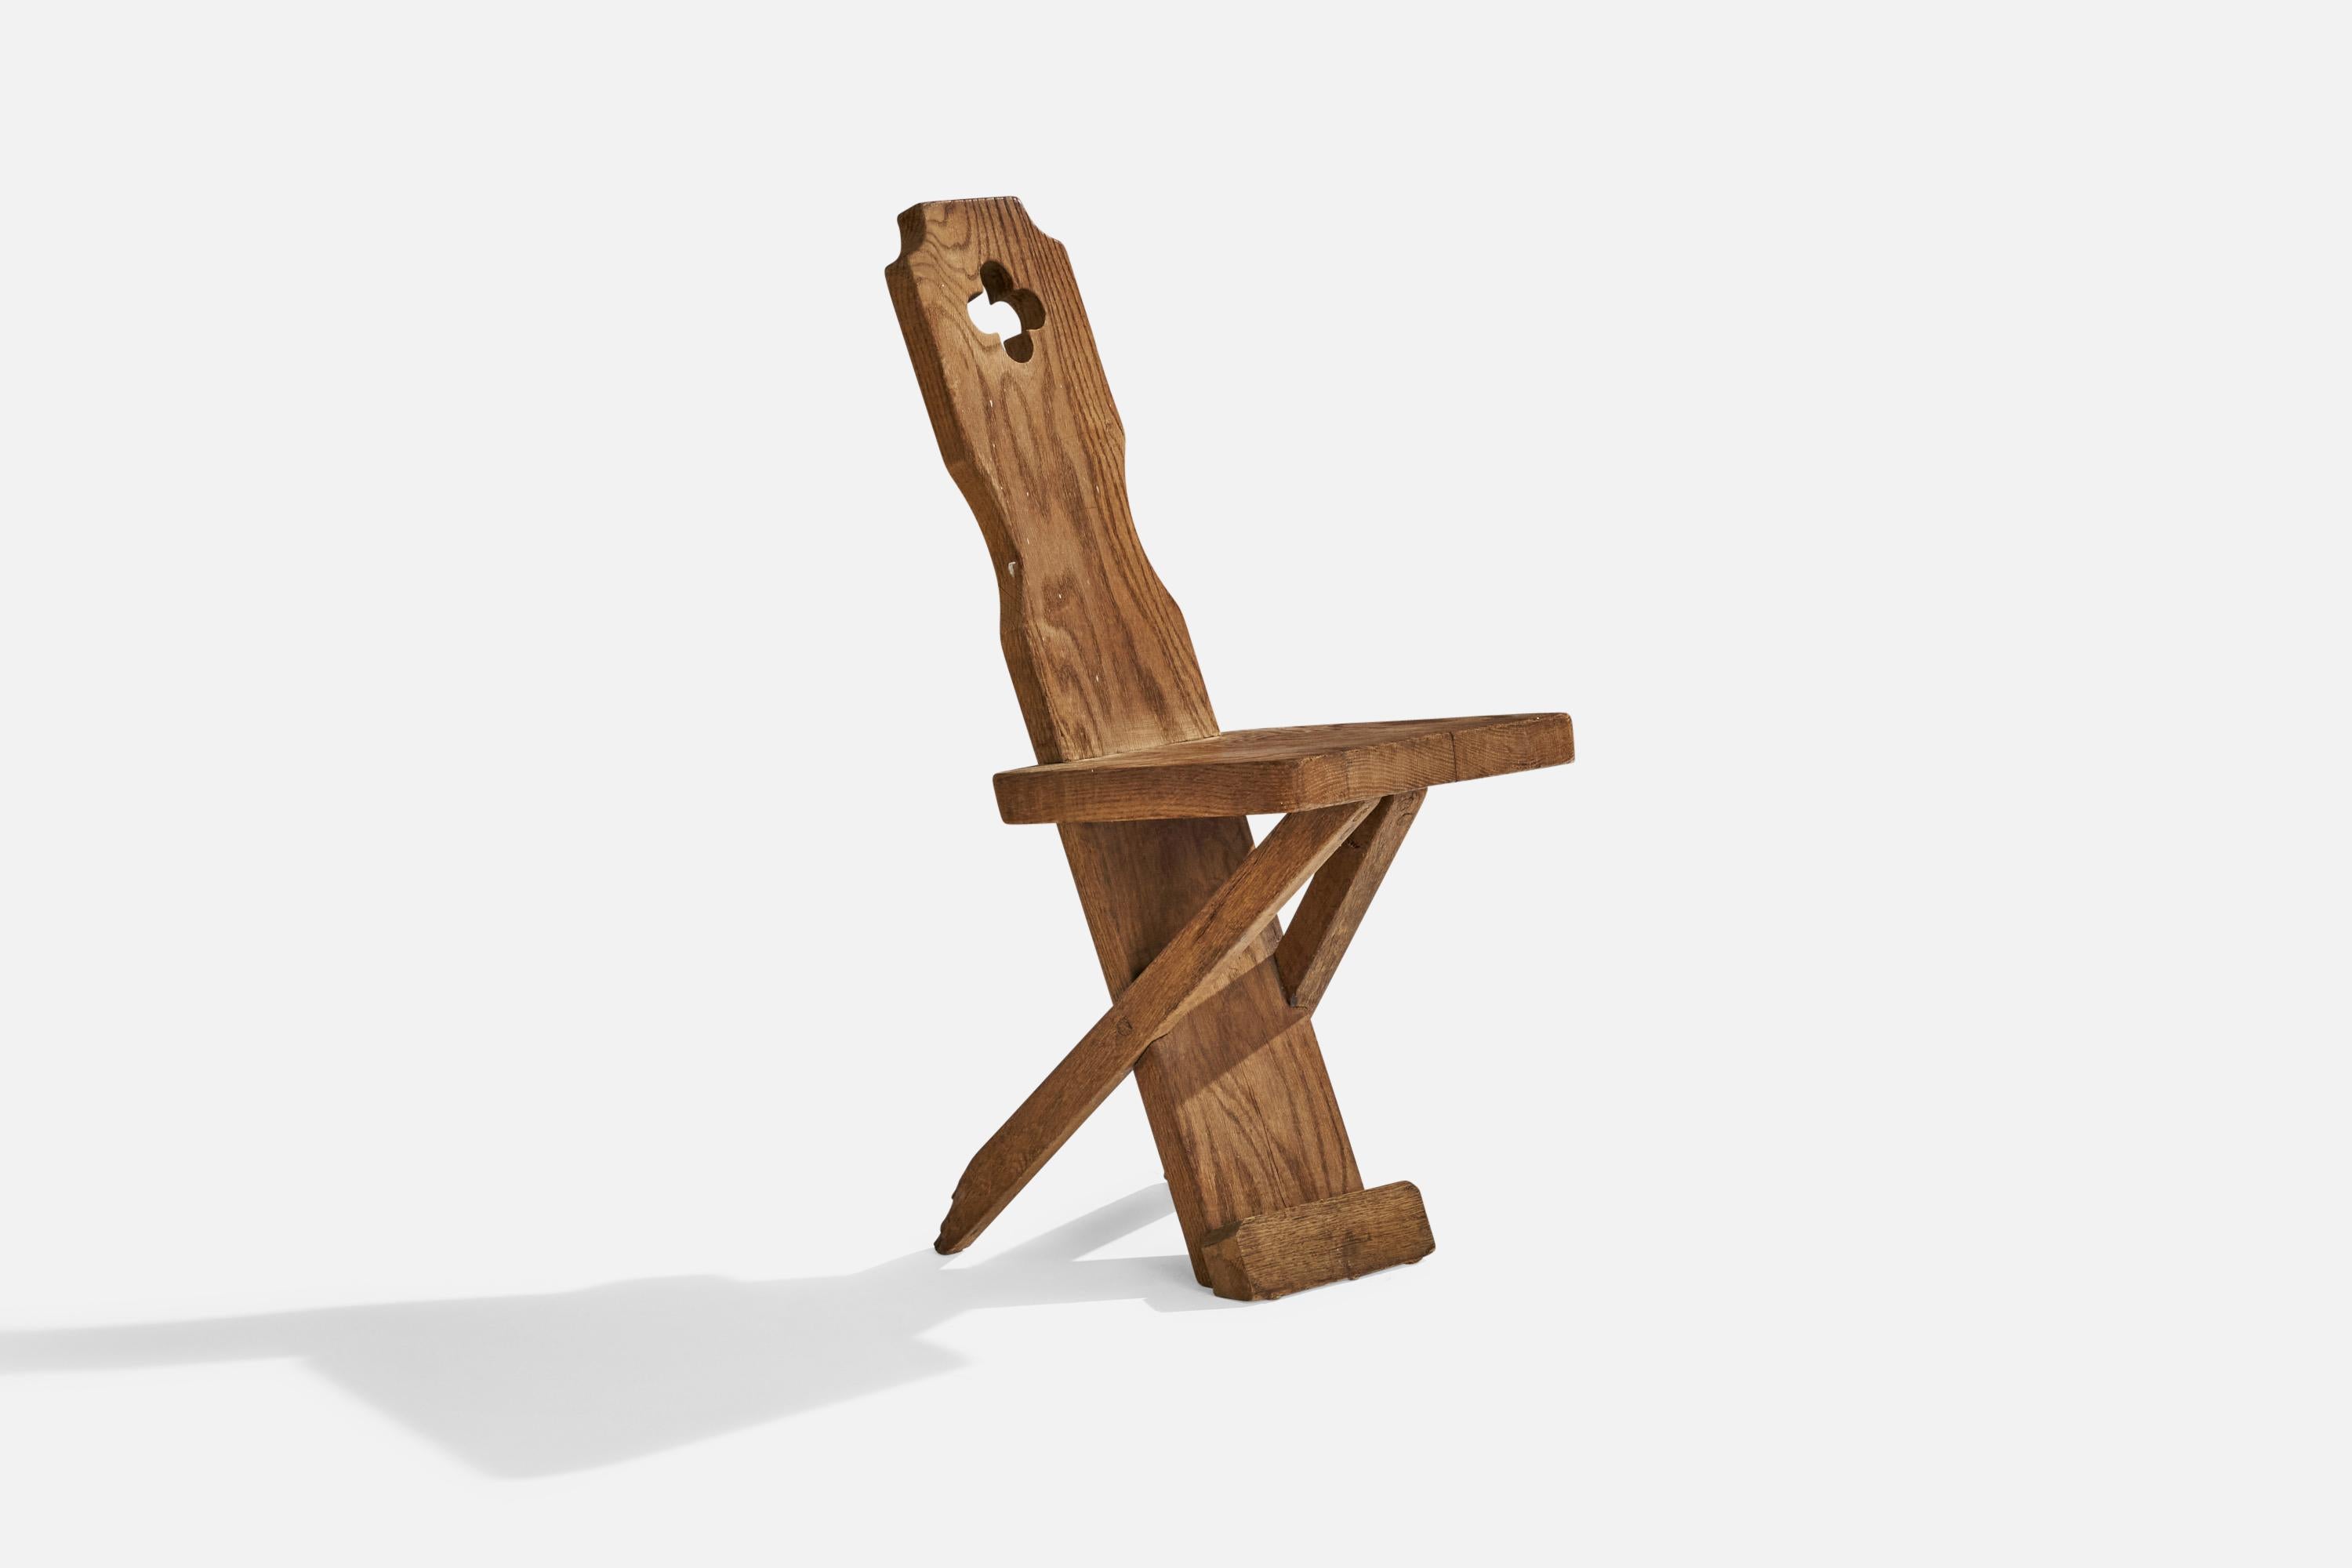 Beistell- oder Esszimmerstuhl aus Eichenholz, entworfen und hergestellt in Dänemark, ca. 1920er Jahre.

Sitzhöhe 18